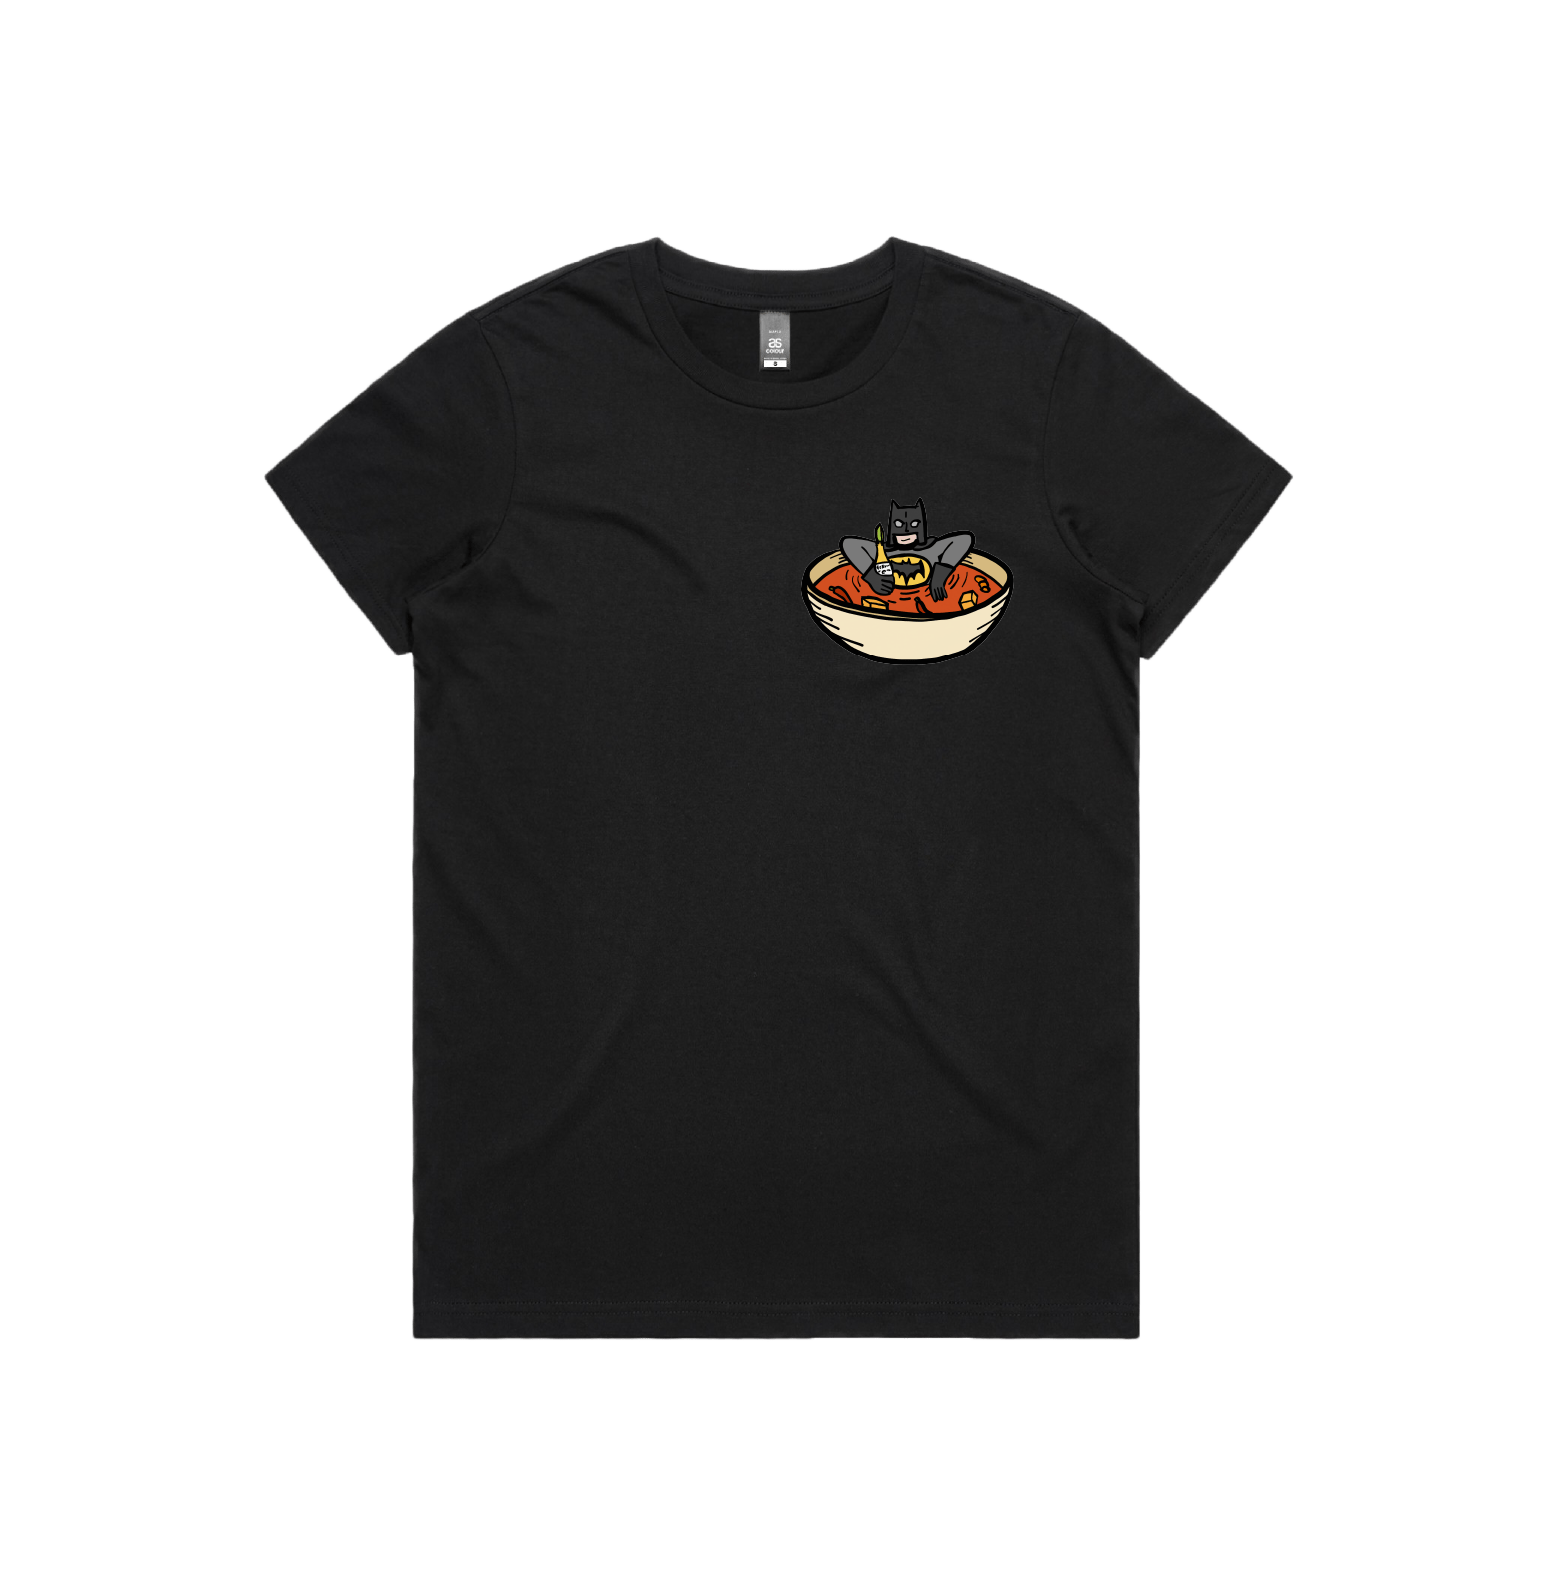 XS / Black / Small Front Design Bat Soup 🦇 - Women's T Shirt